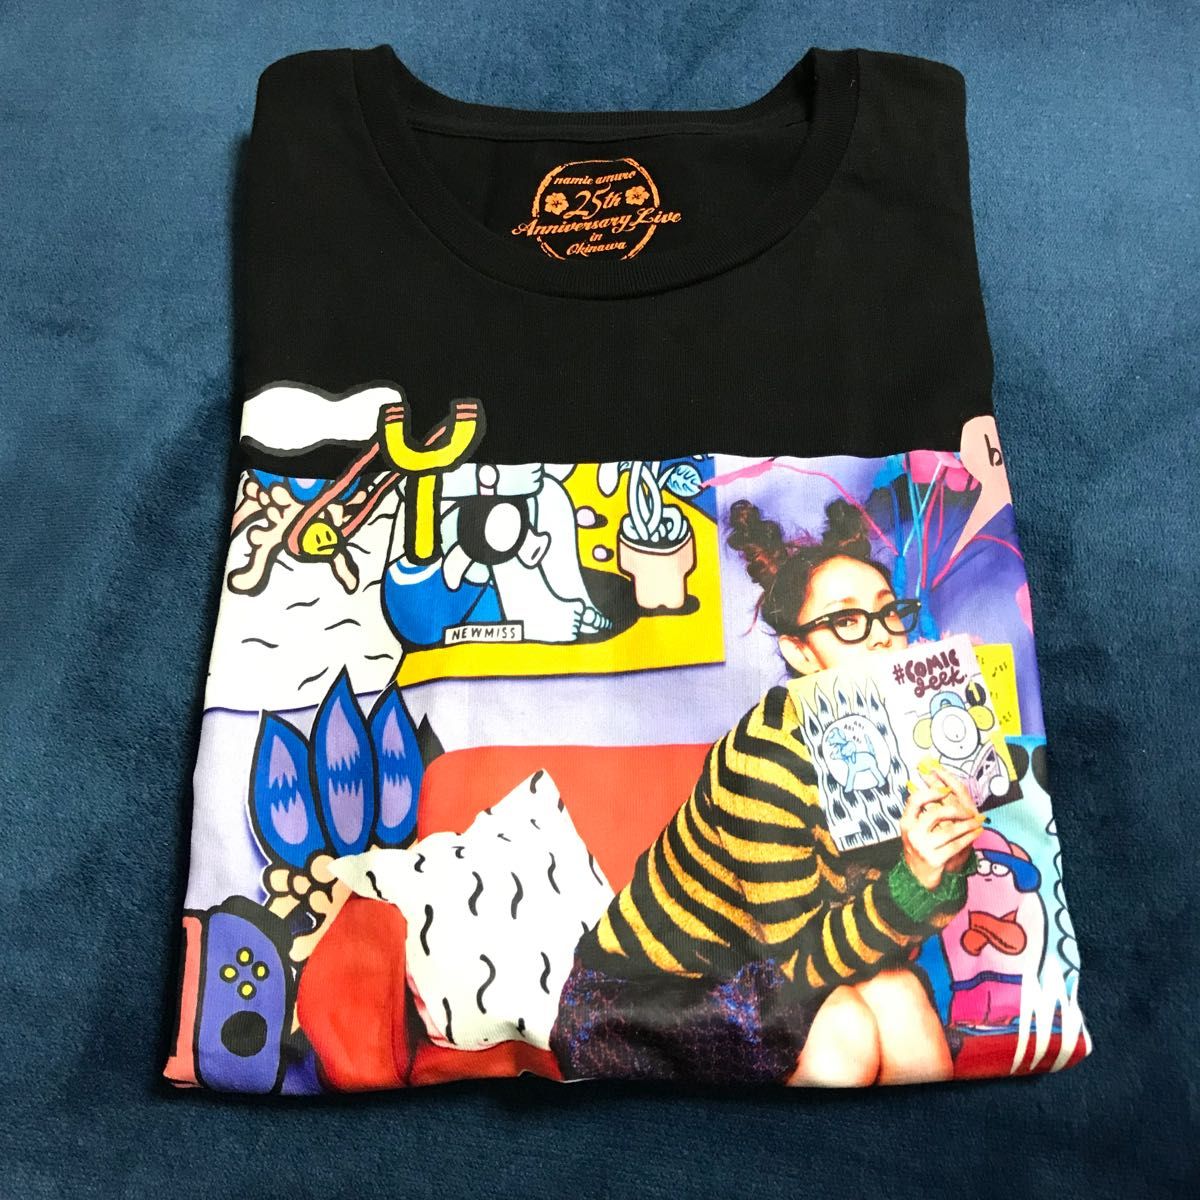 年度末セール 【新品未使用】安室奈美恵 25周年沖縄ライブ Tシャツ(S